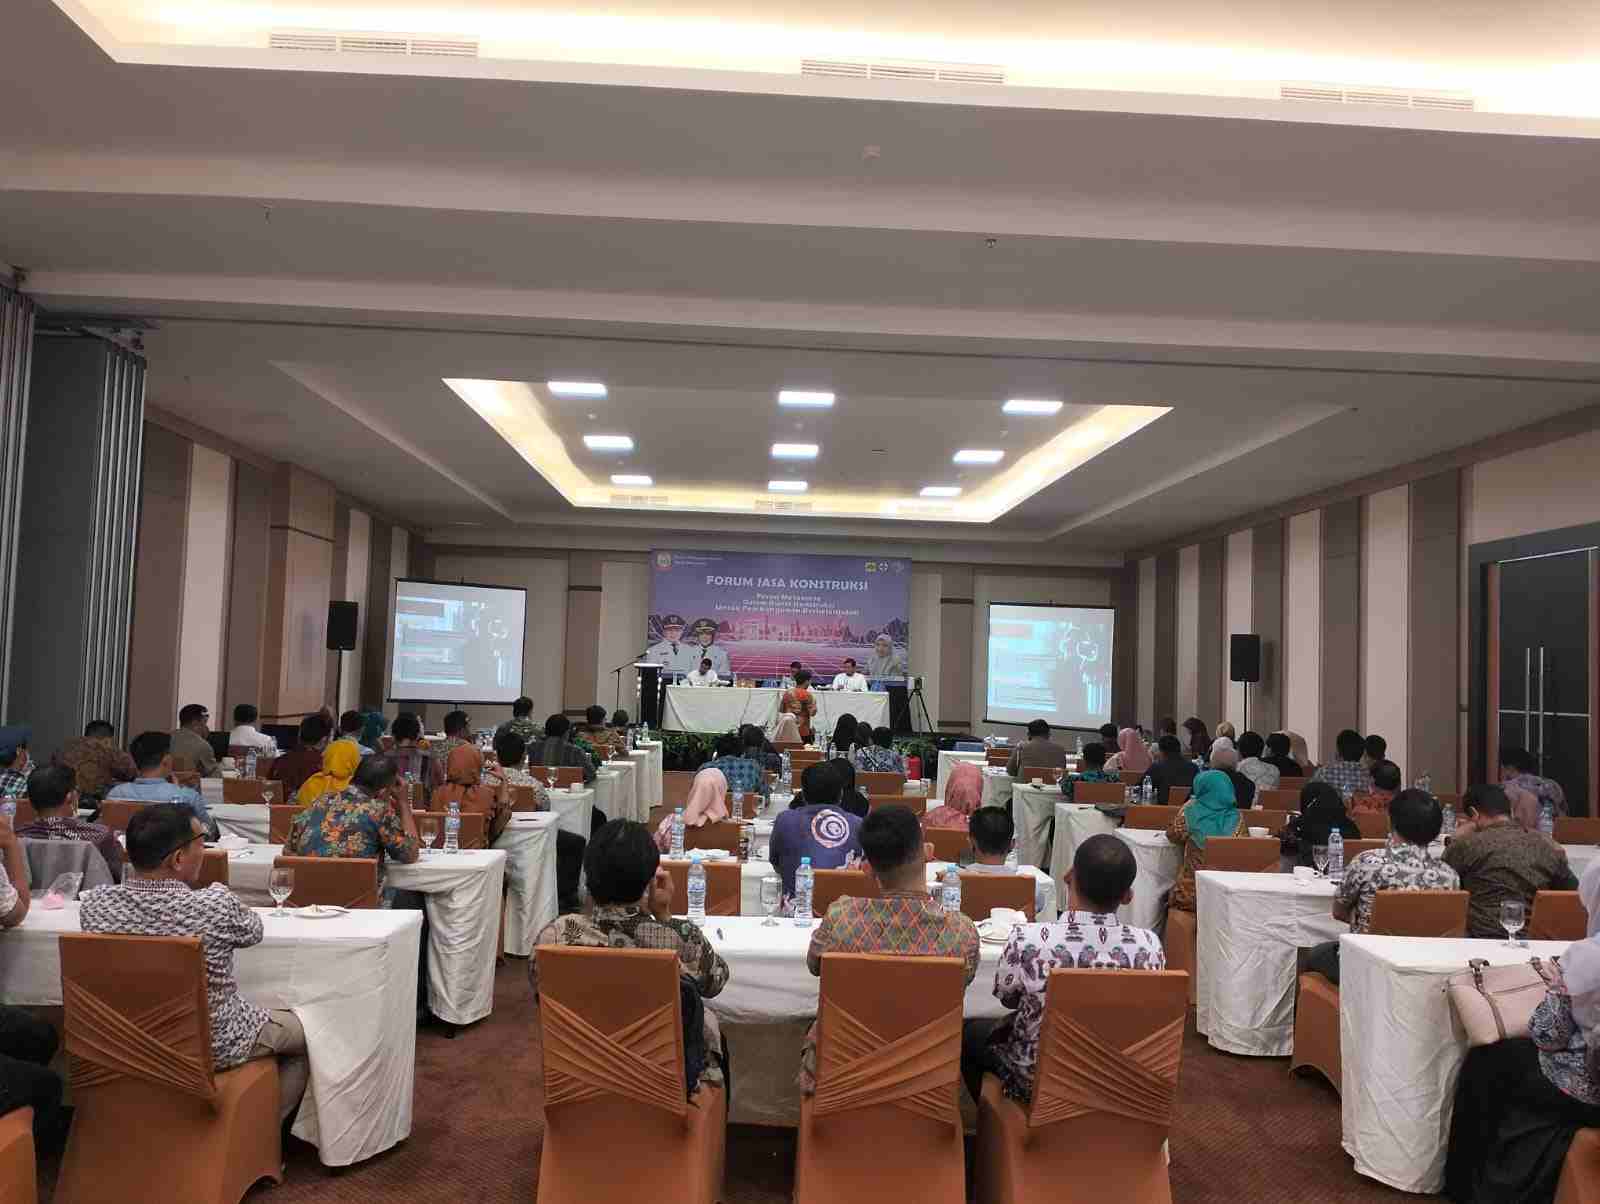 Dinas PU Makassar Angkat Tema Metaverse pada Forum Jasa Konstruksi